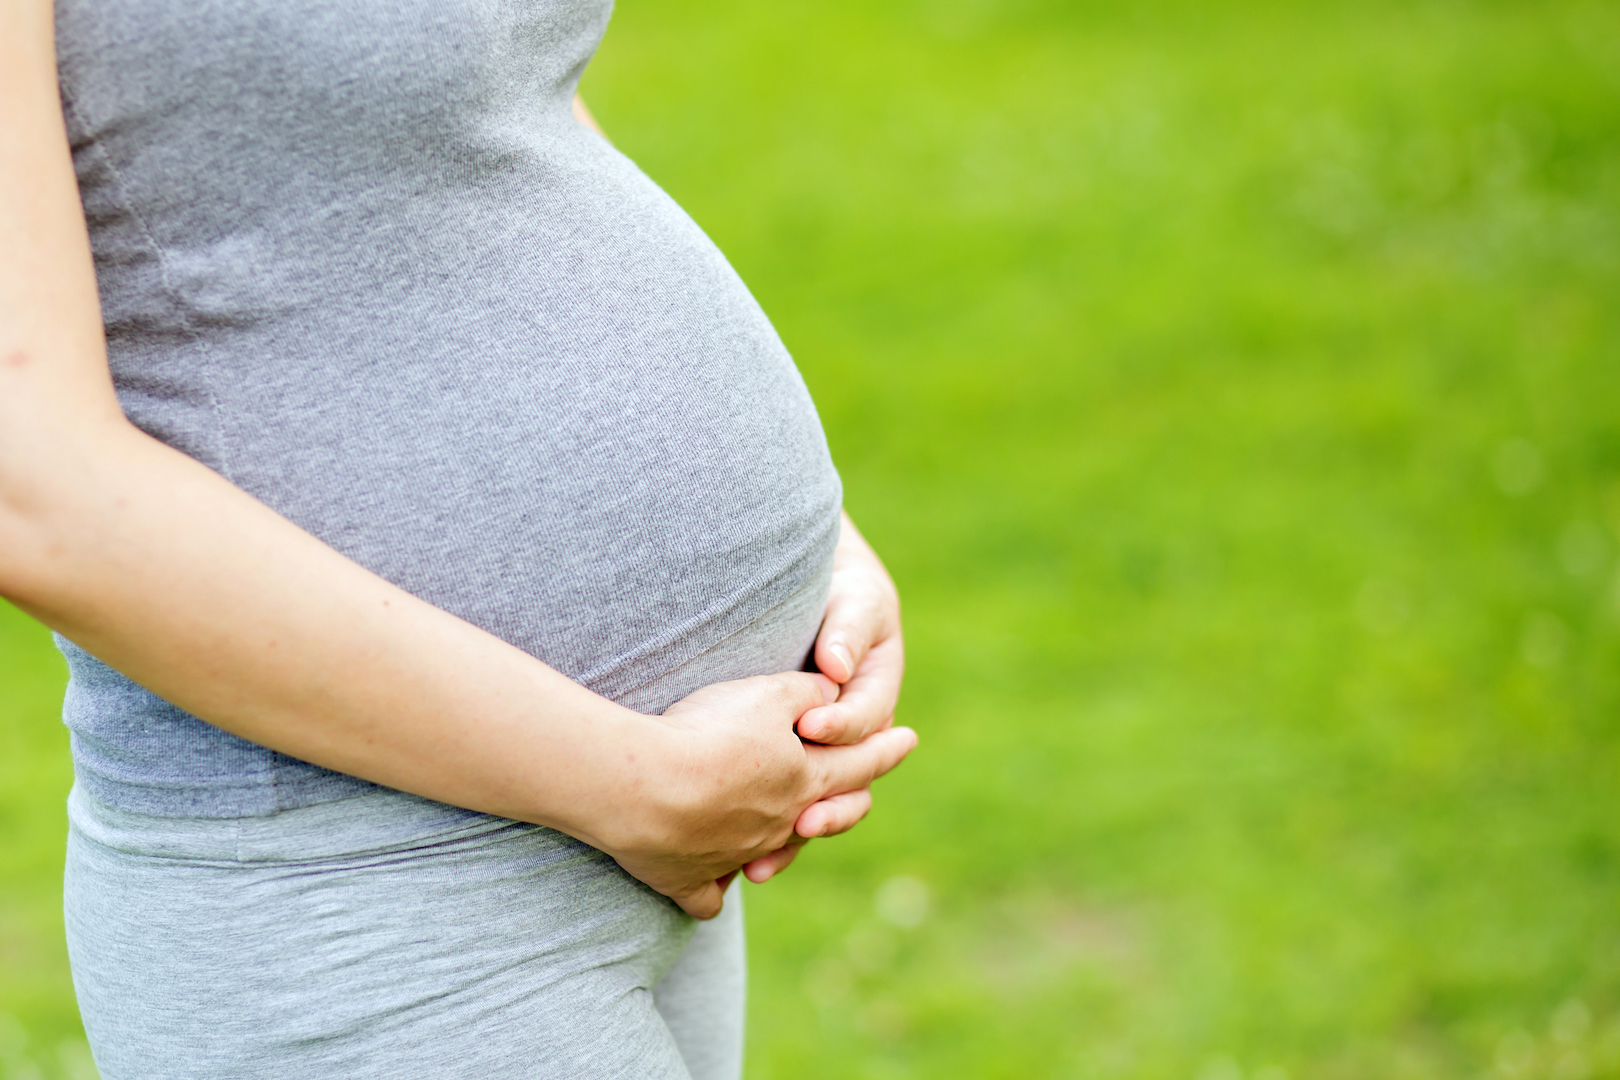 جنسیت جنین و تغییرات پوستی مادر به هم مربوط است